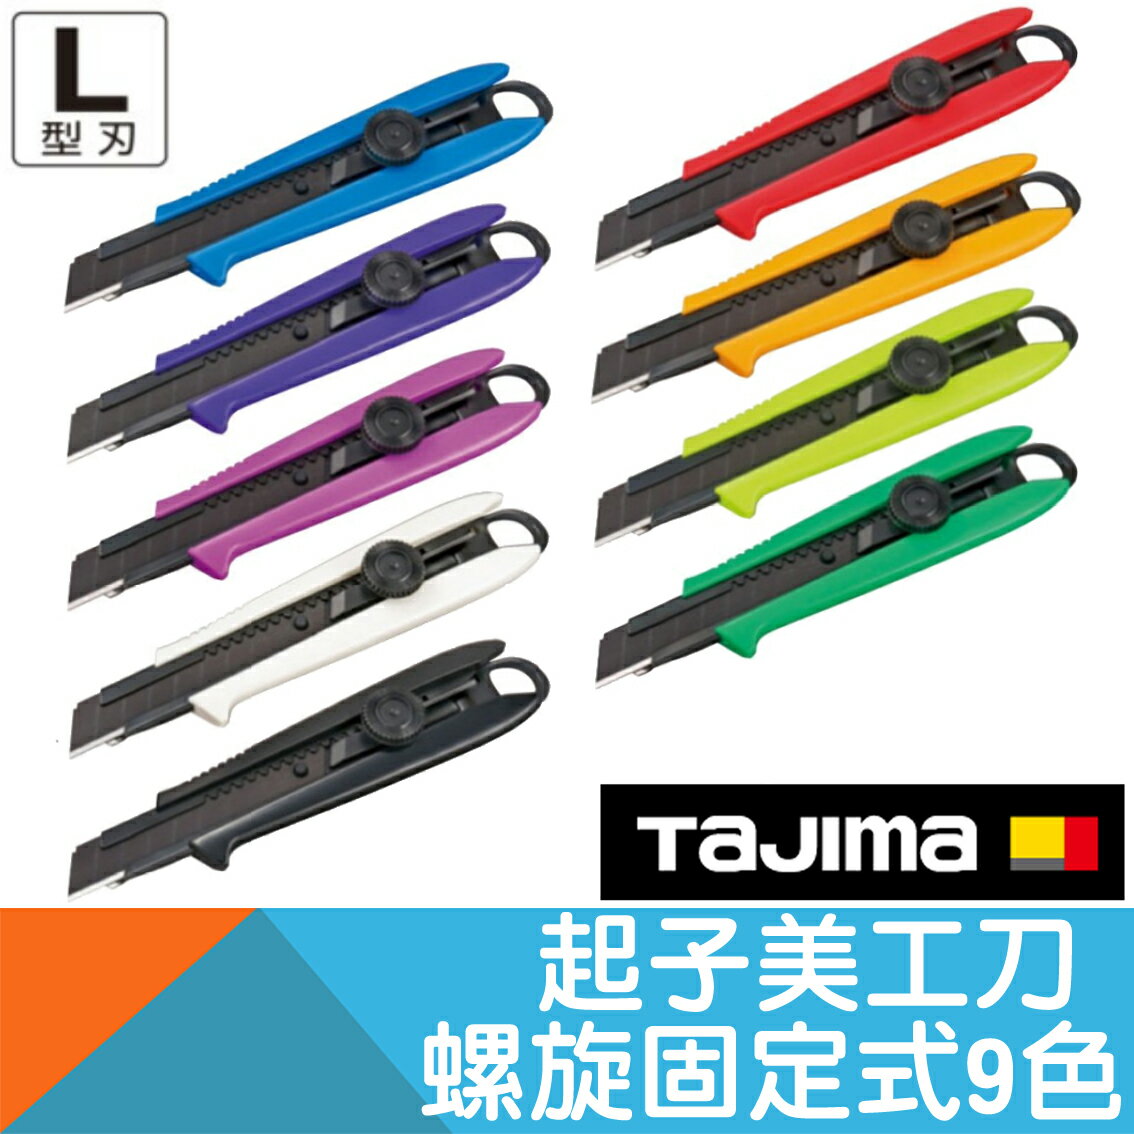 起子美工刀 螺旋固定式 9種顏色【日本Tajima】